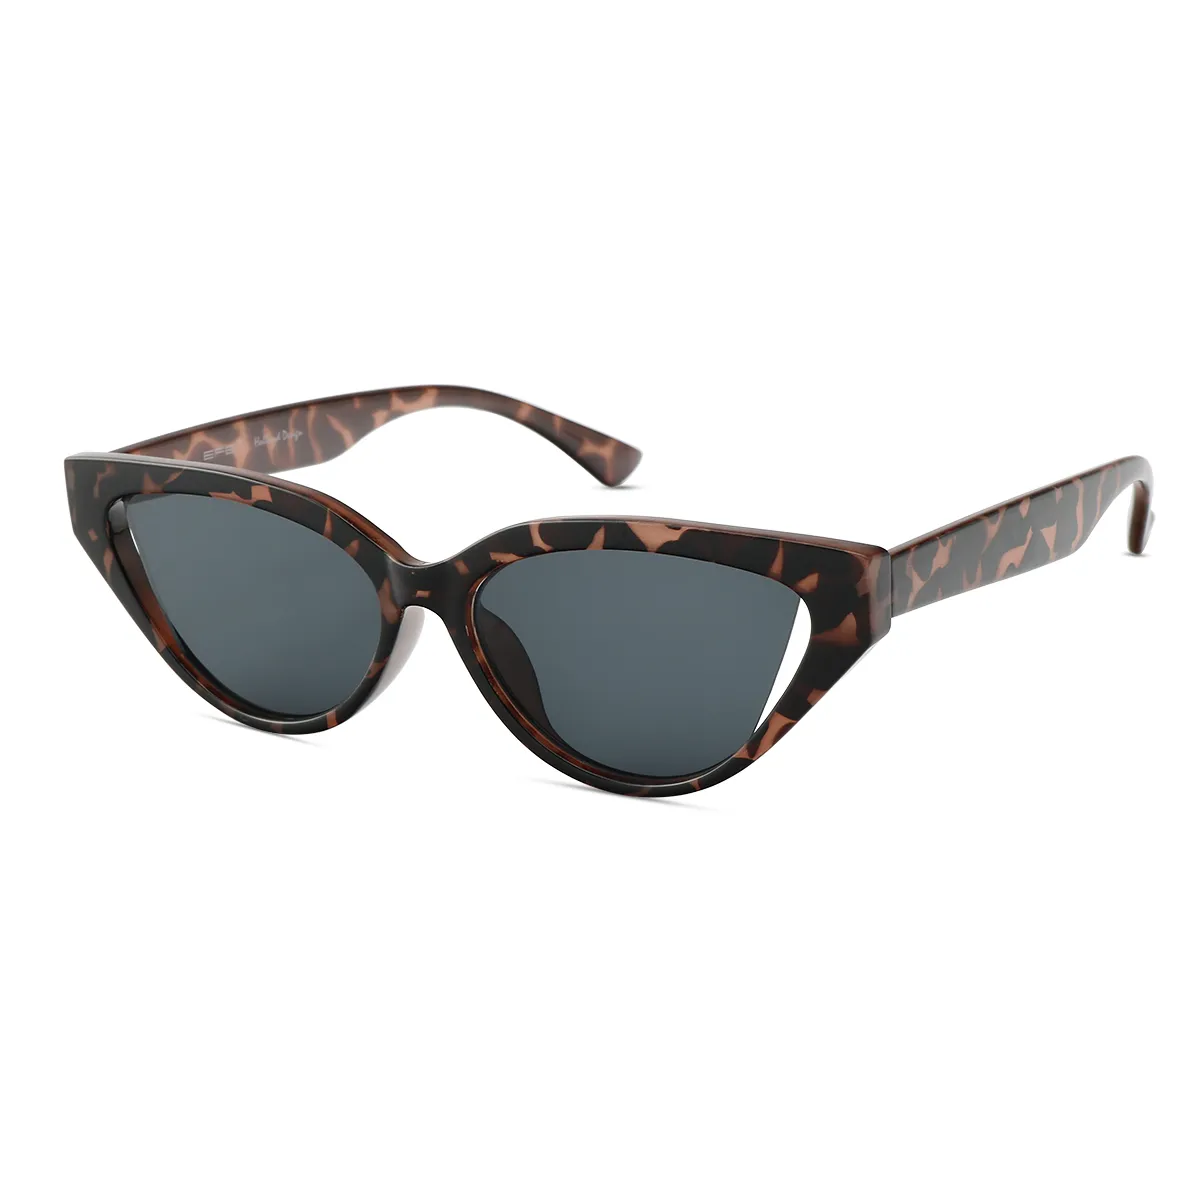 Maisie - Cat-eye Tortoiseshell Sunglasses for Women